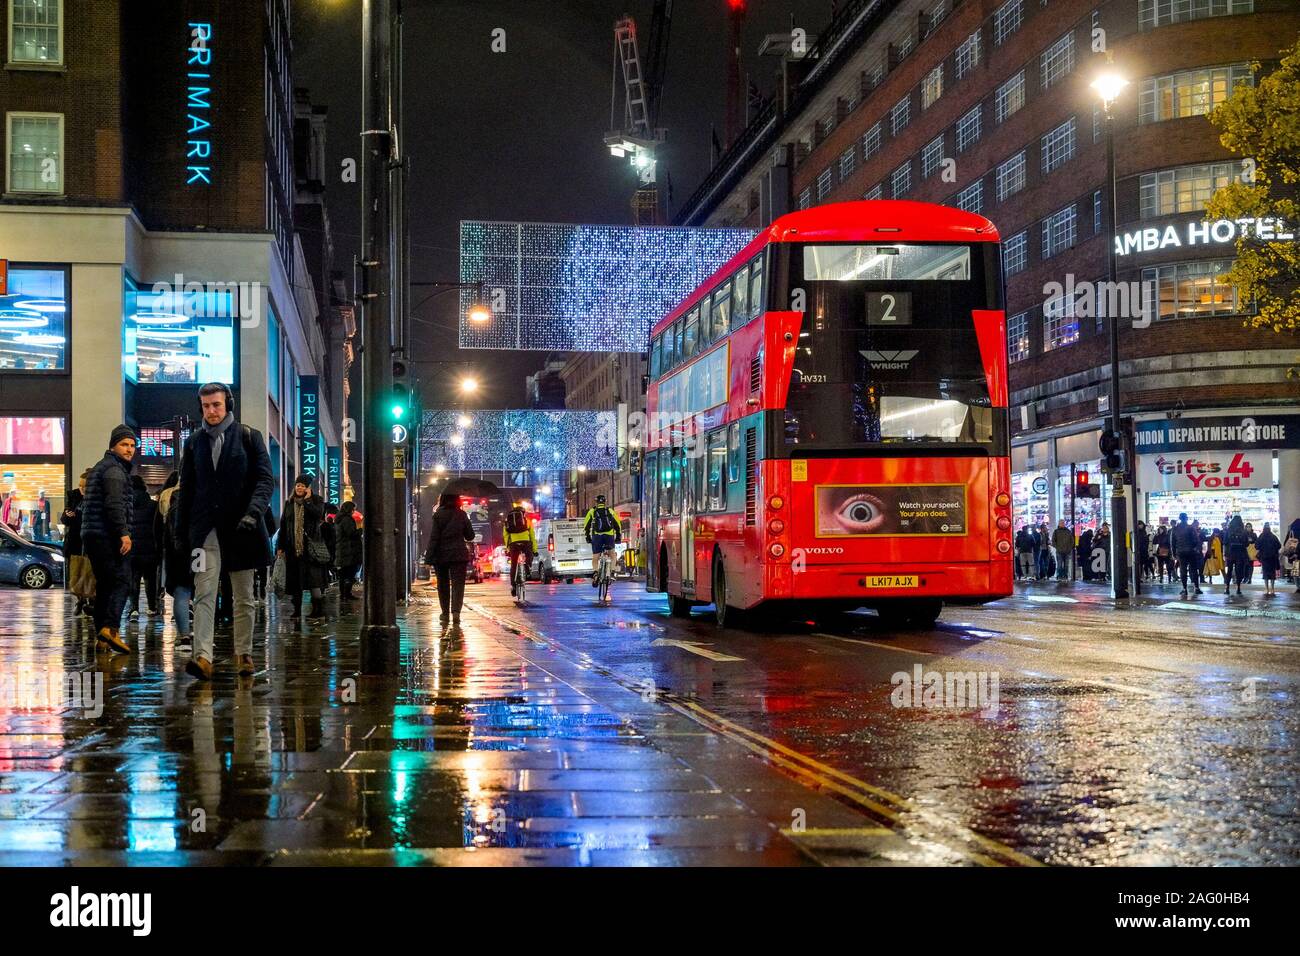 Autobus rosso a due piani, Oxford Street, notte, Londra, Inghilterra, Regno Unito Foto Stock